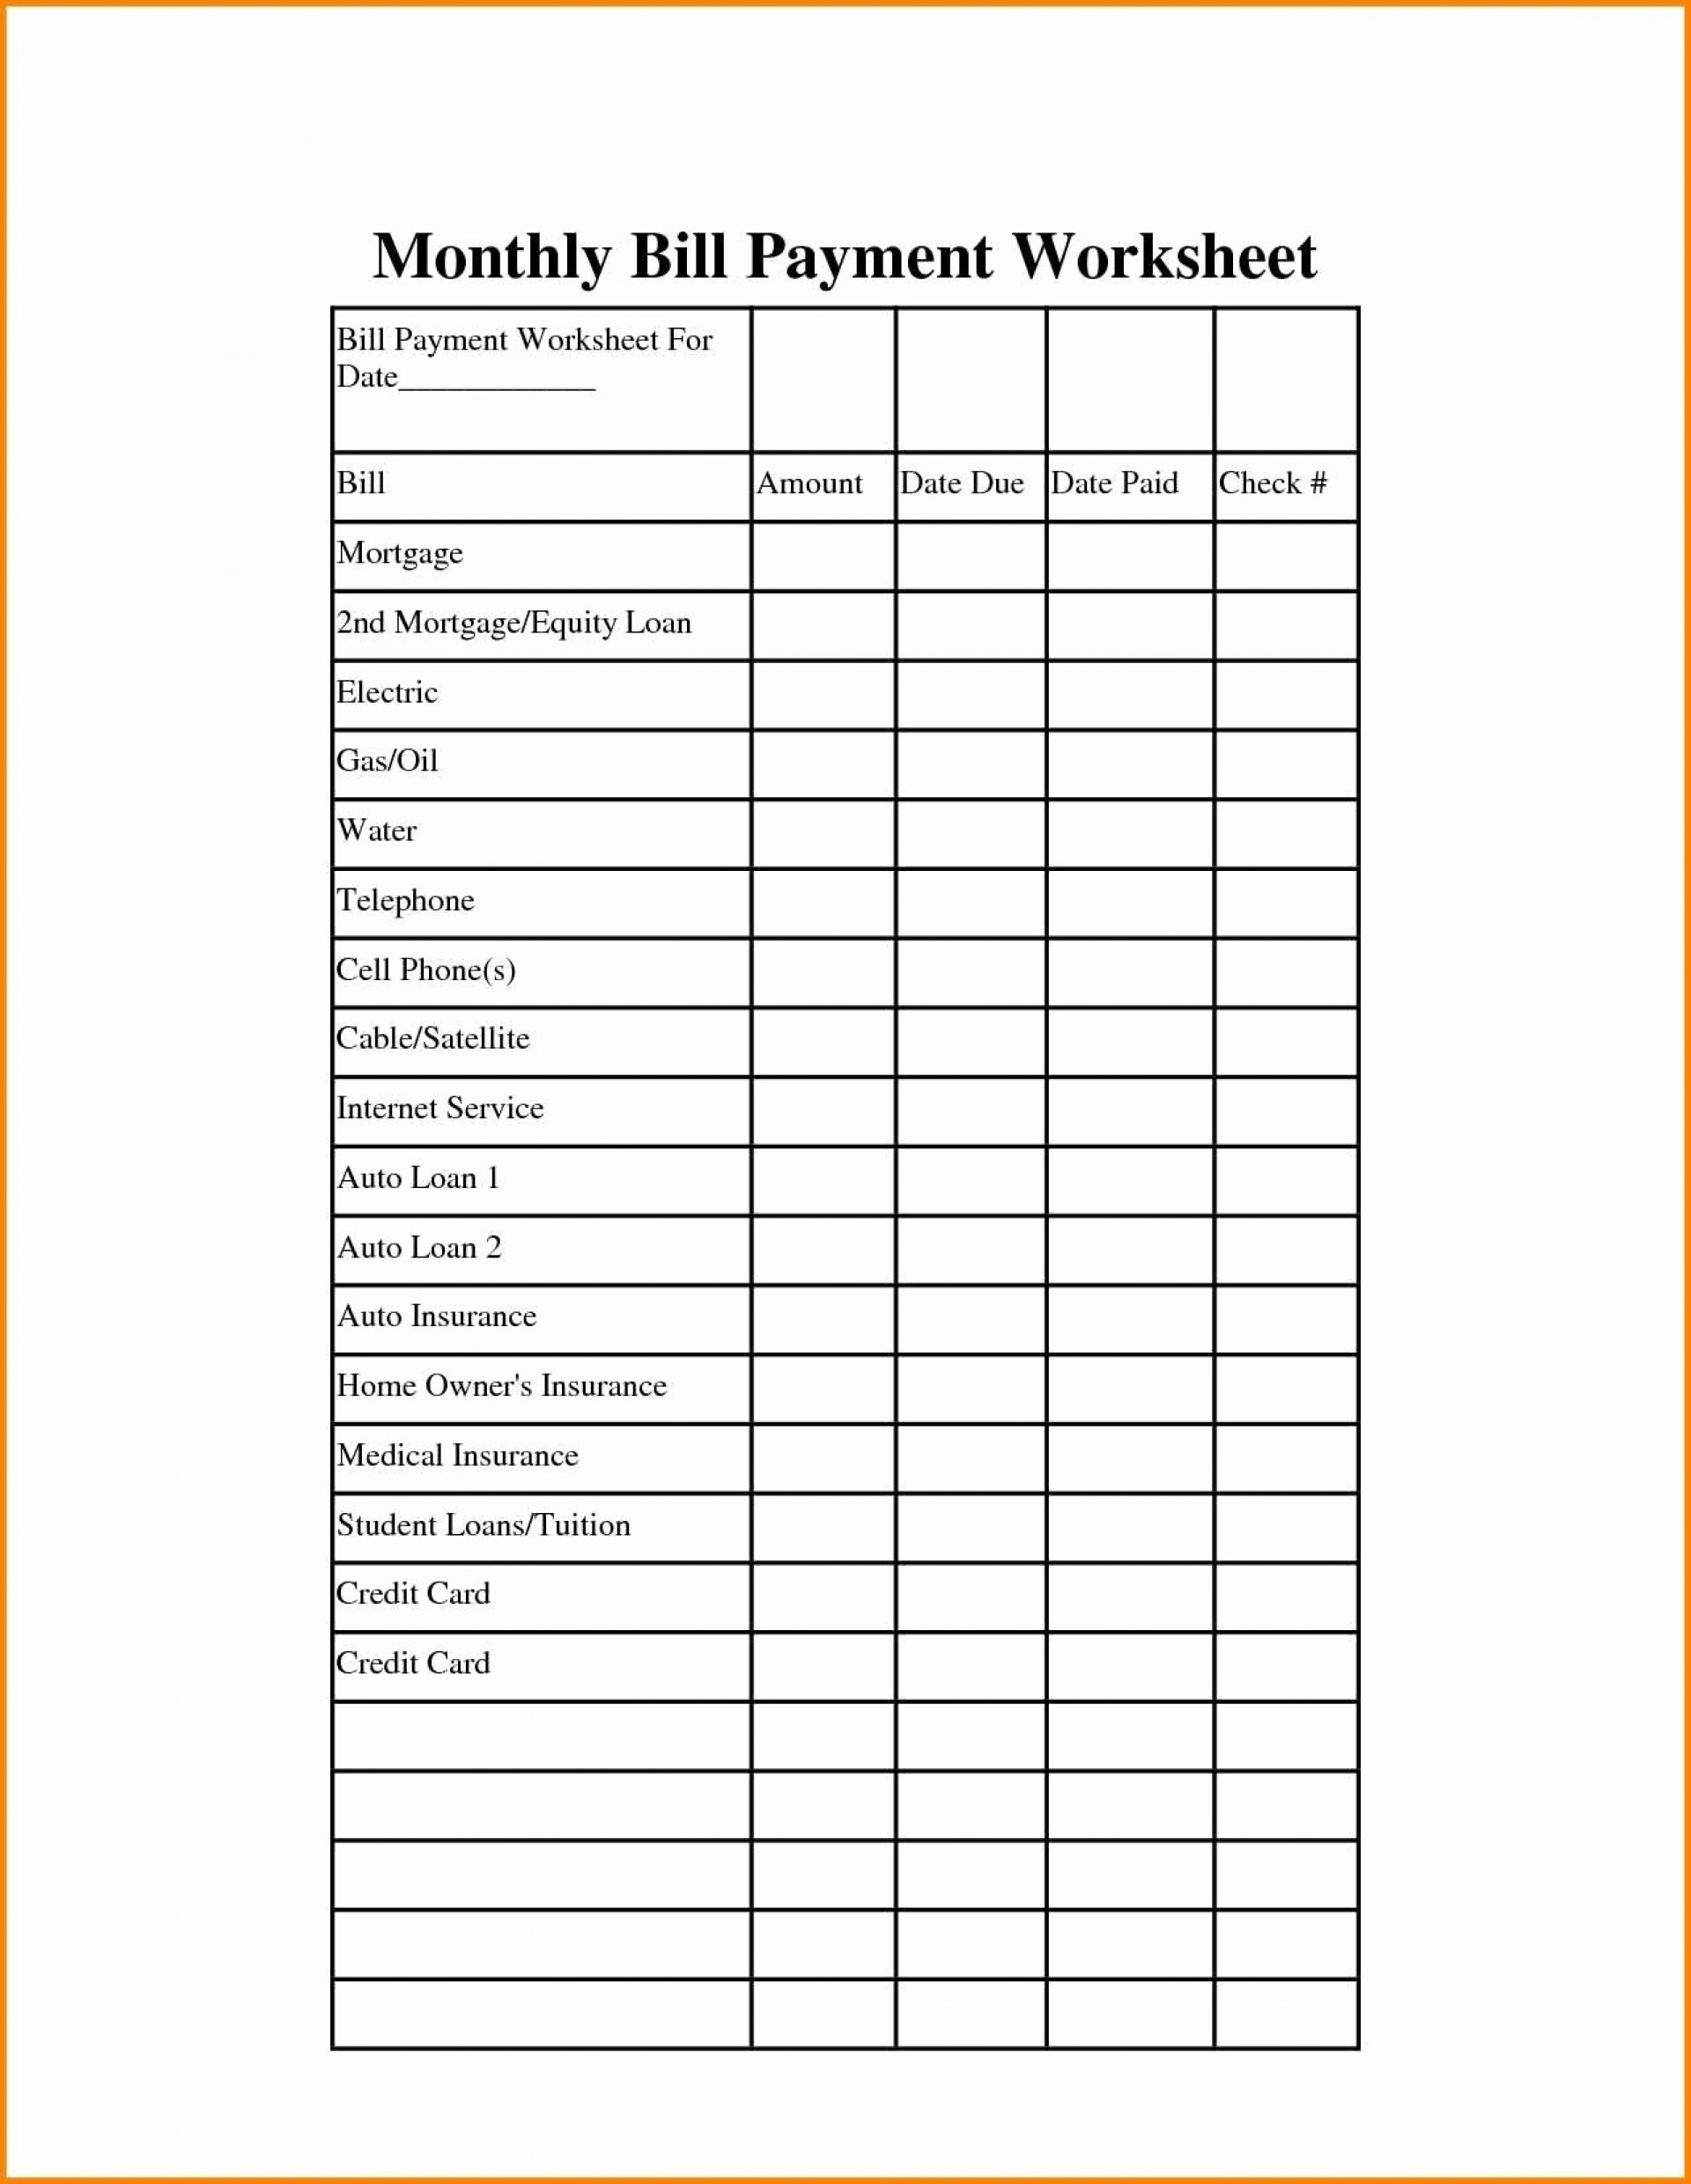 Weekly Bill Worksheet | Printable Worksheets And Activities in Monthly Bills Worksheet